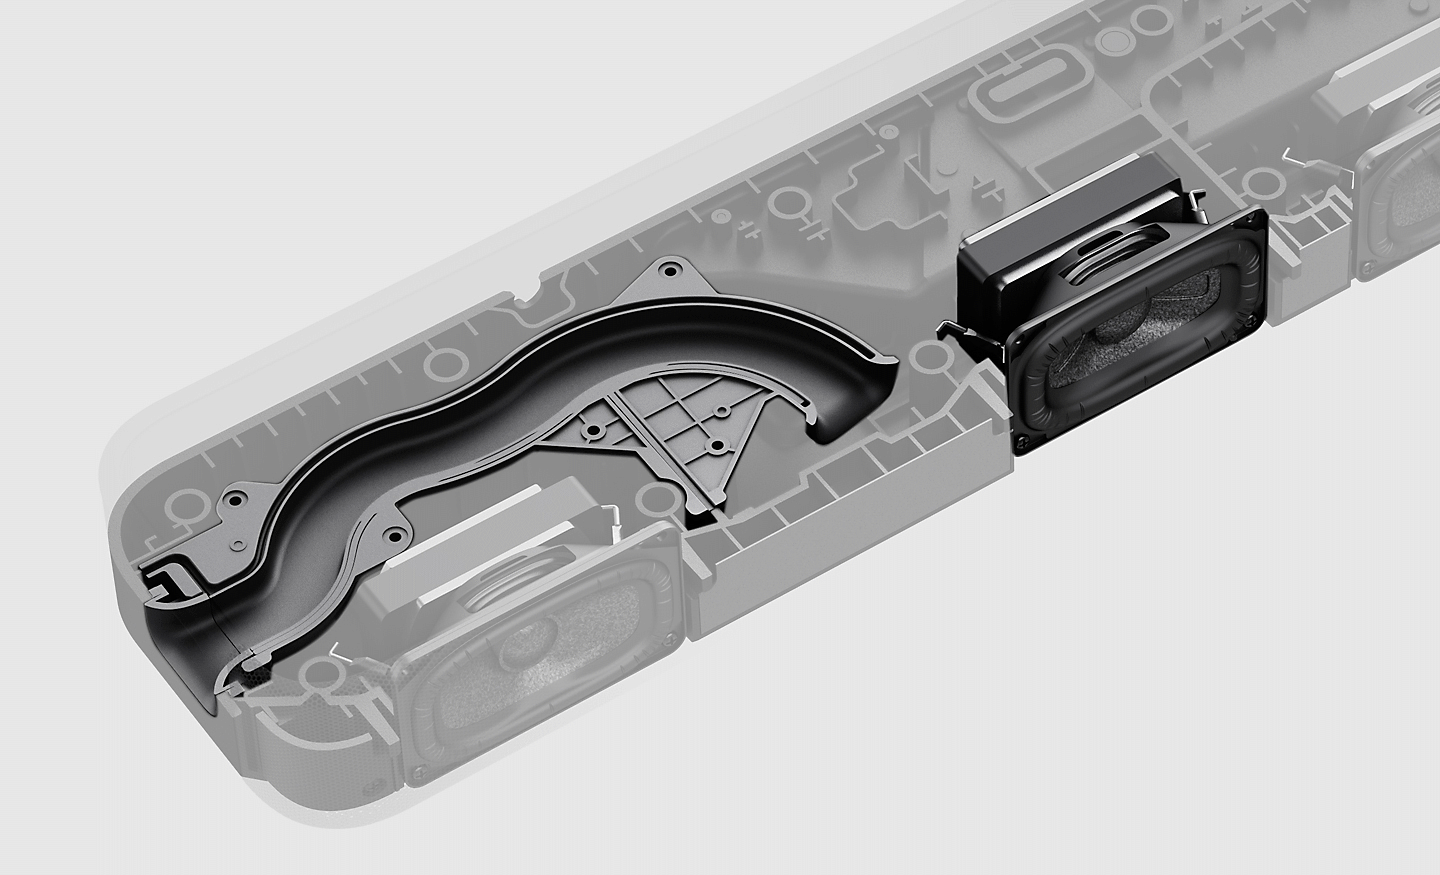 Snímek vnitřních součástí soundbaru HT-S2000 se zaměřením na zvukovod a reproduktor